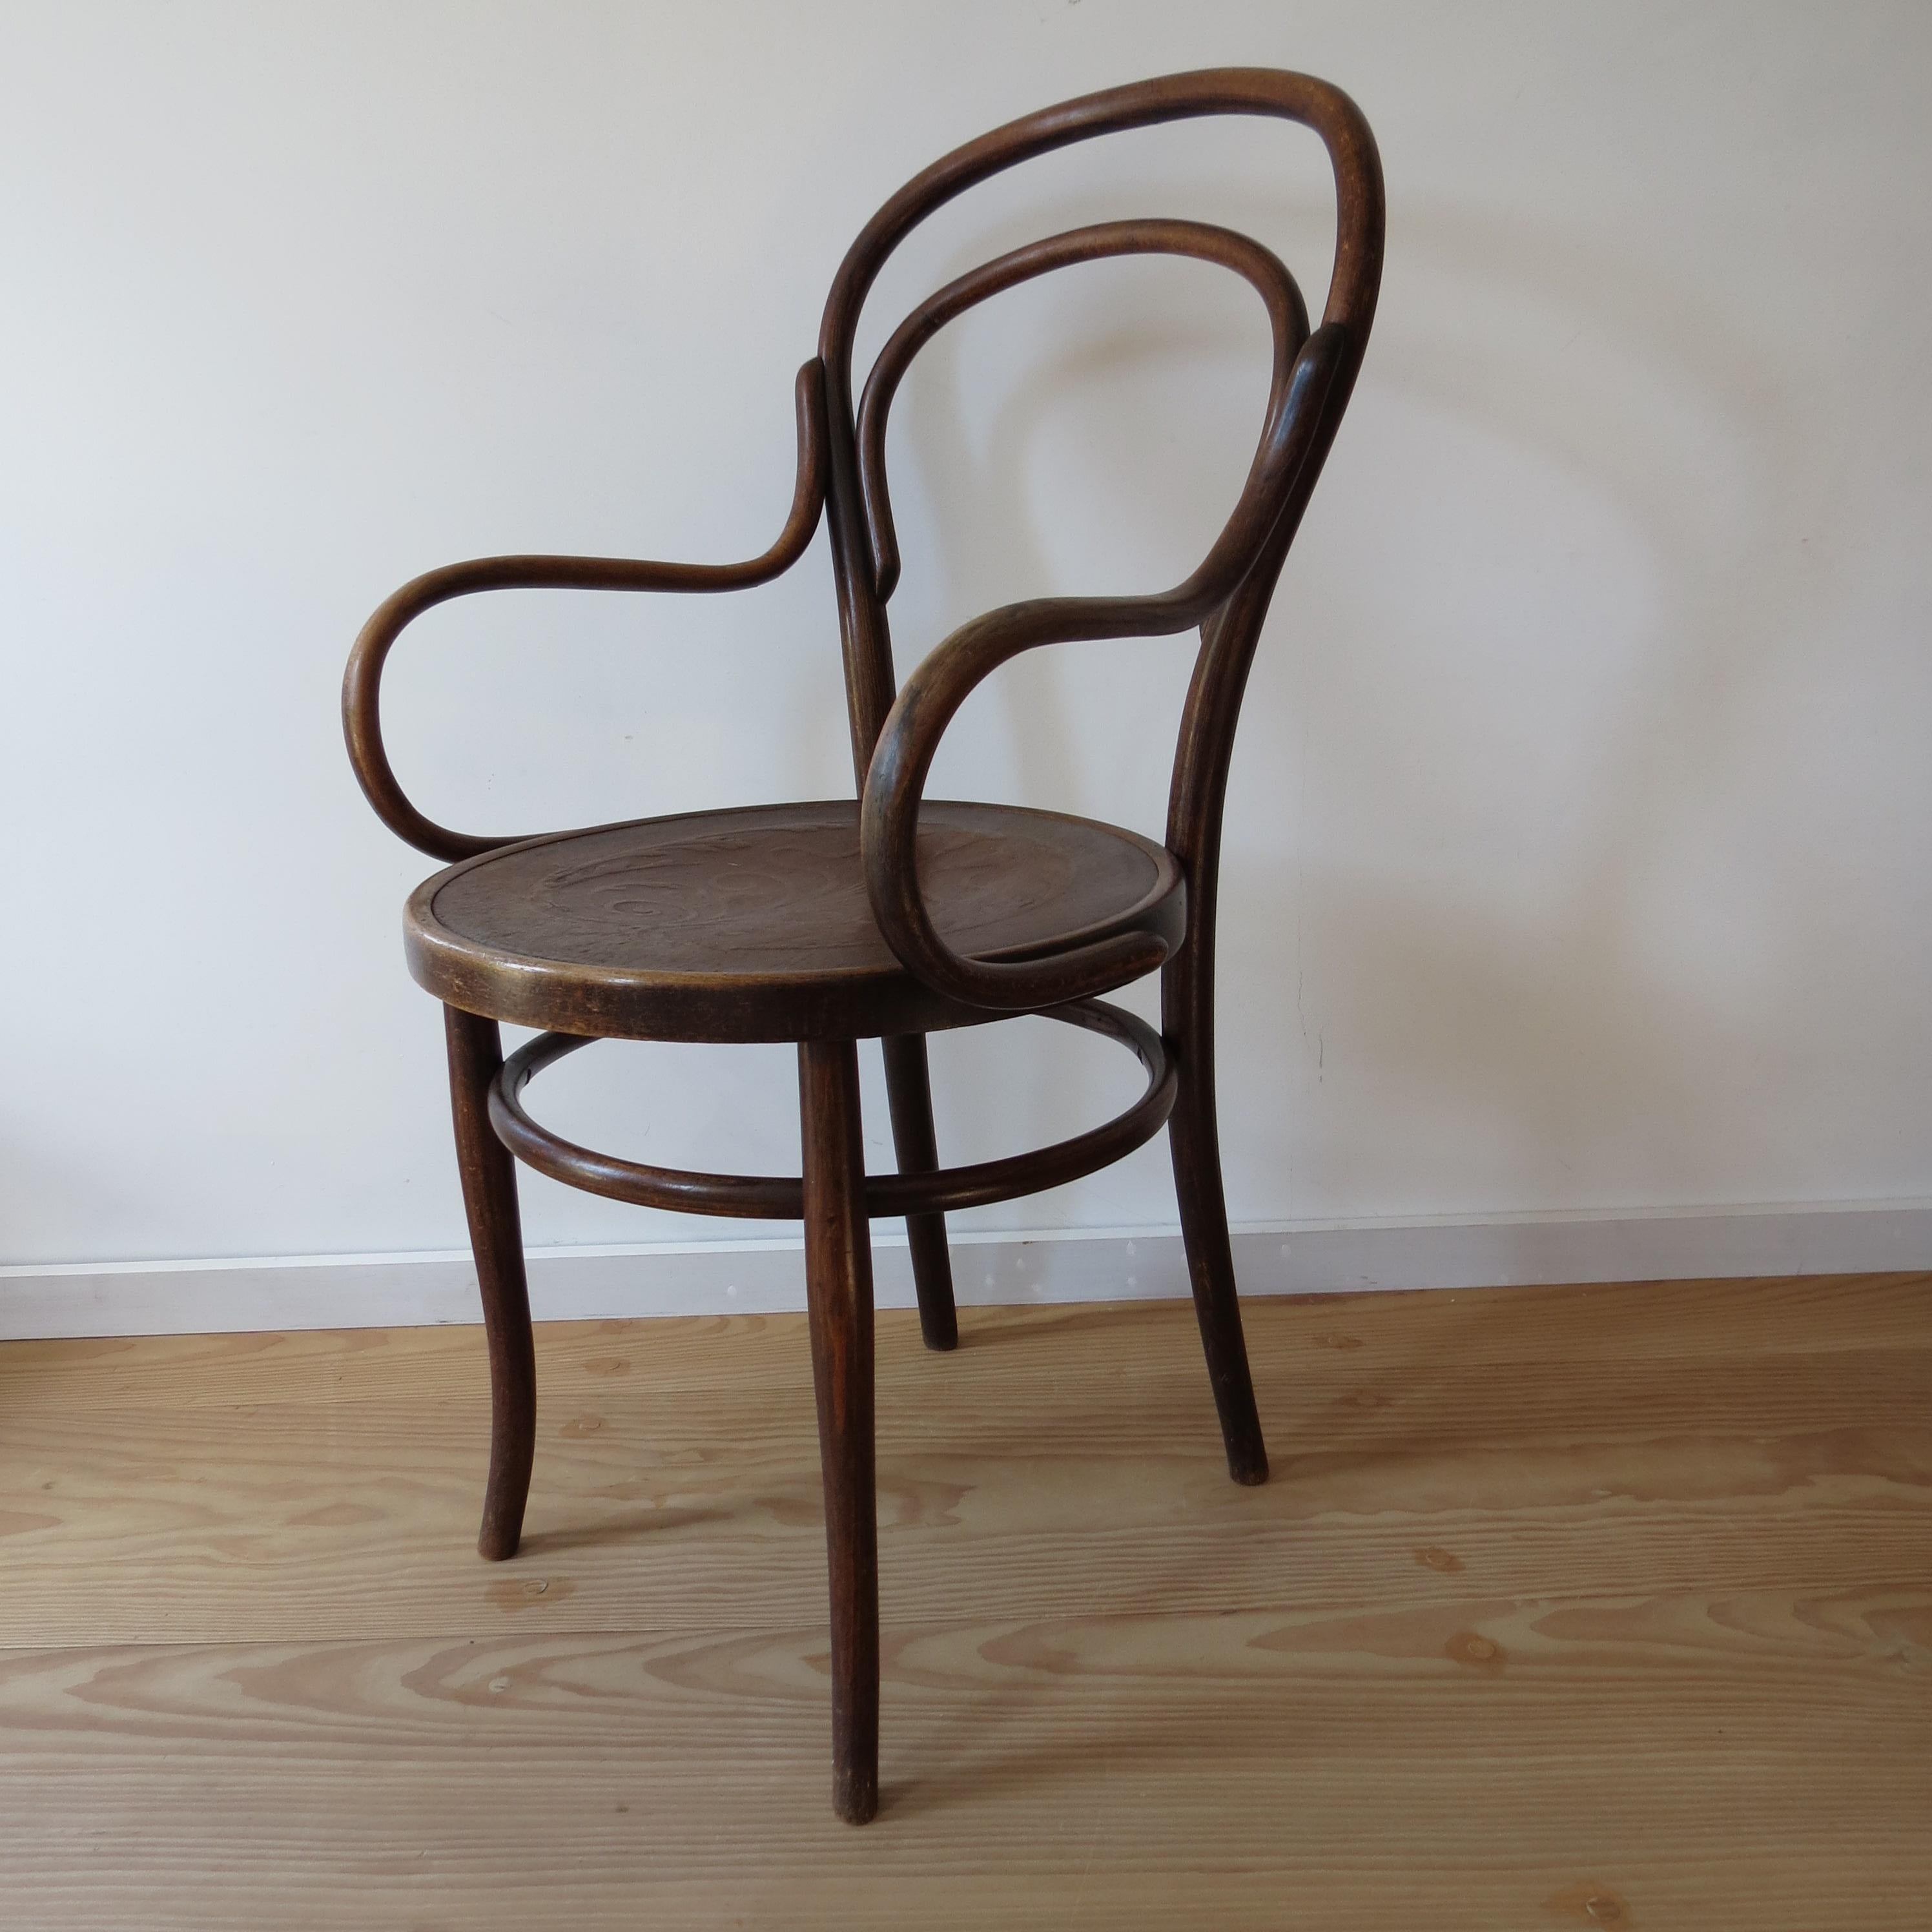 Antique Bentwood Chair No 14 by Thonet 19th Century Art Nouveau 6